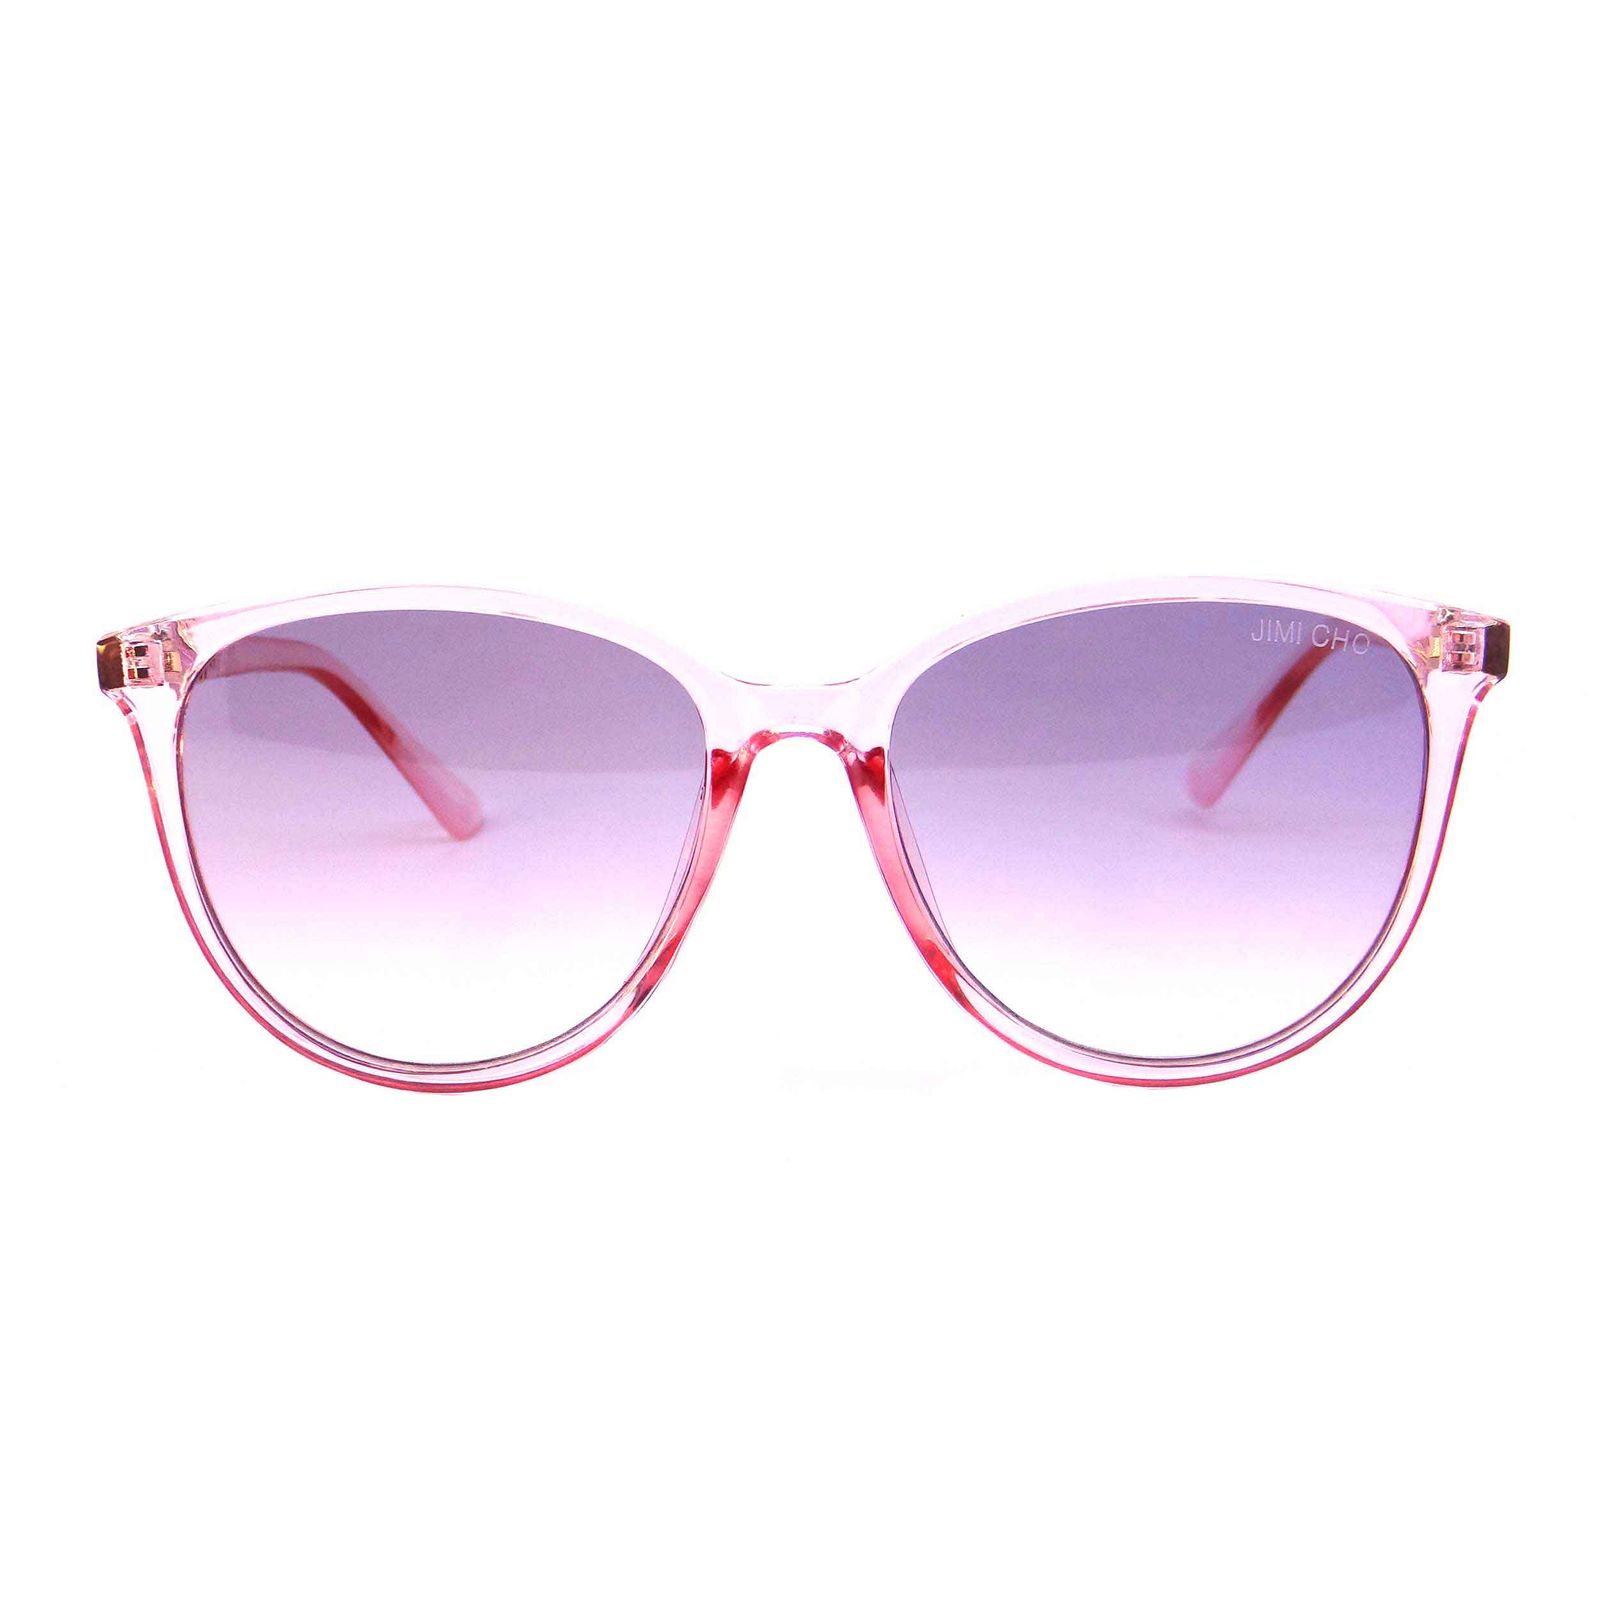 عینک زنانه جیمی چو مدل 9927 -  - 1